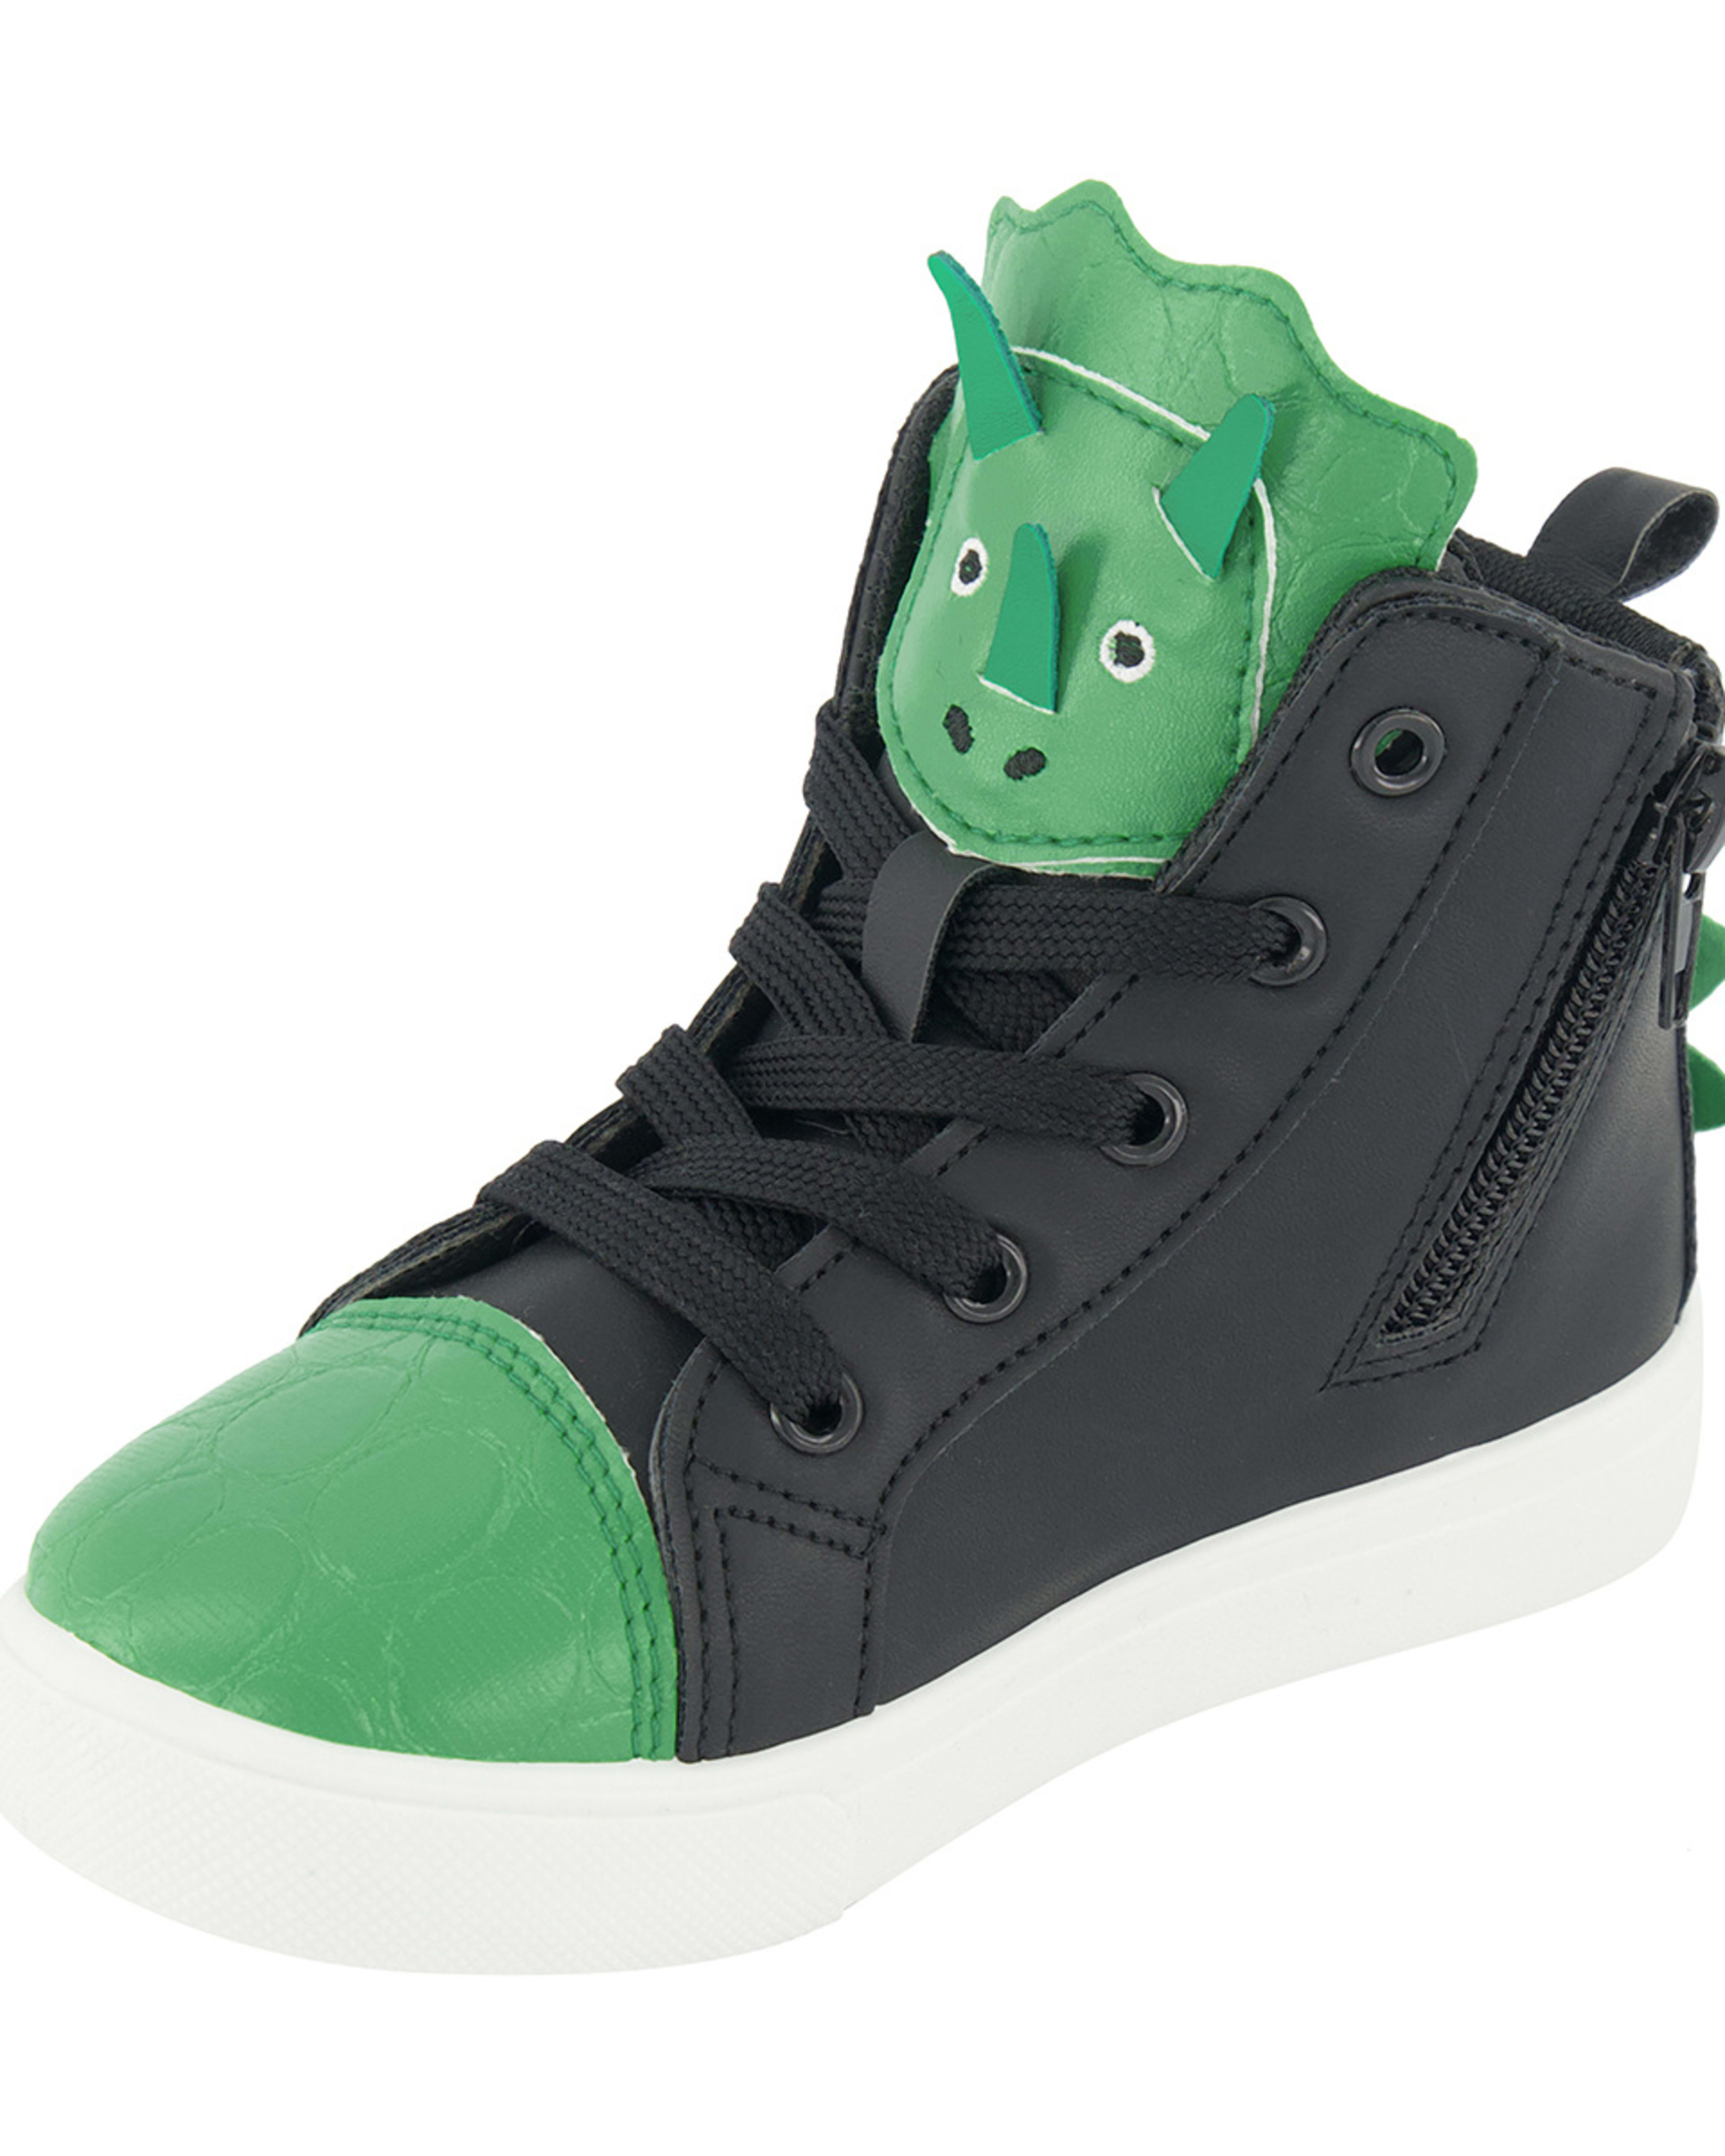 Junior Novelty Sneakers - Kmart